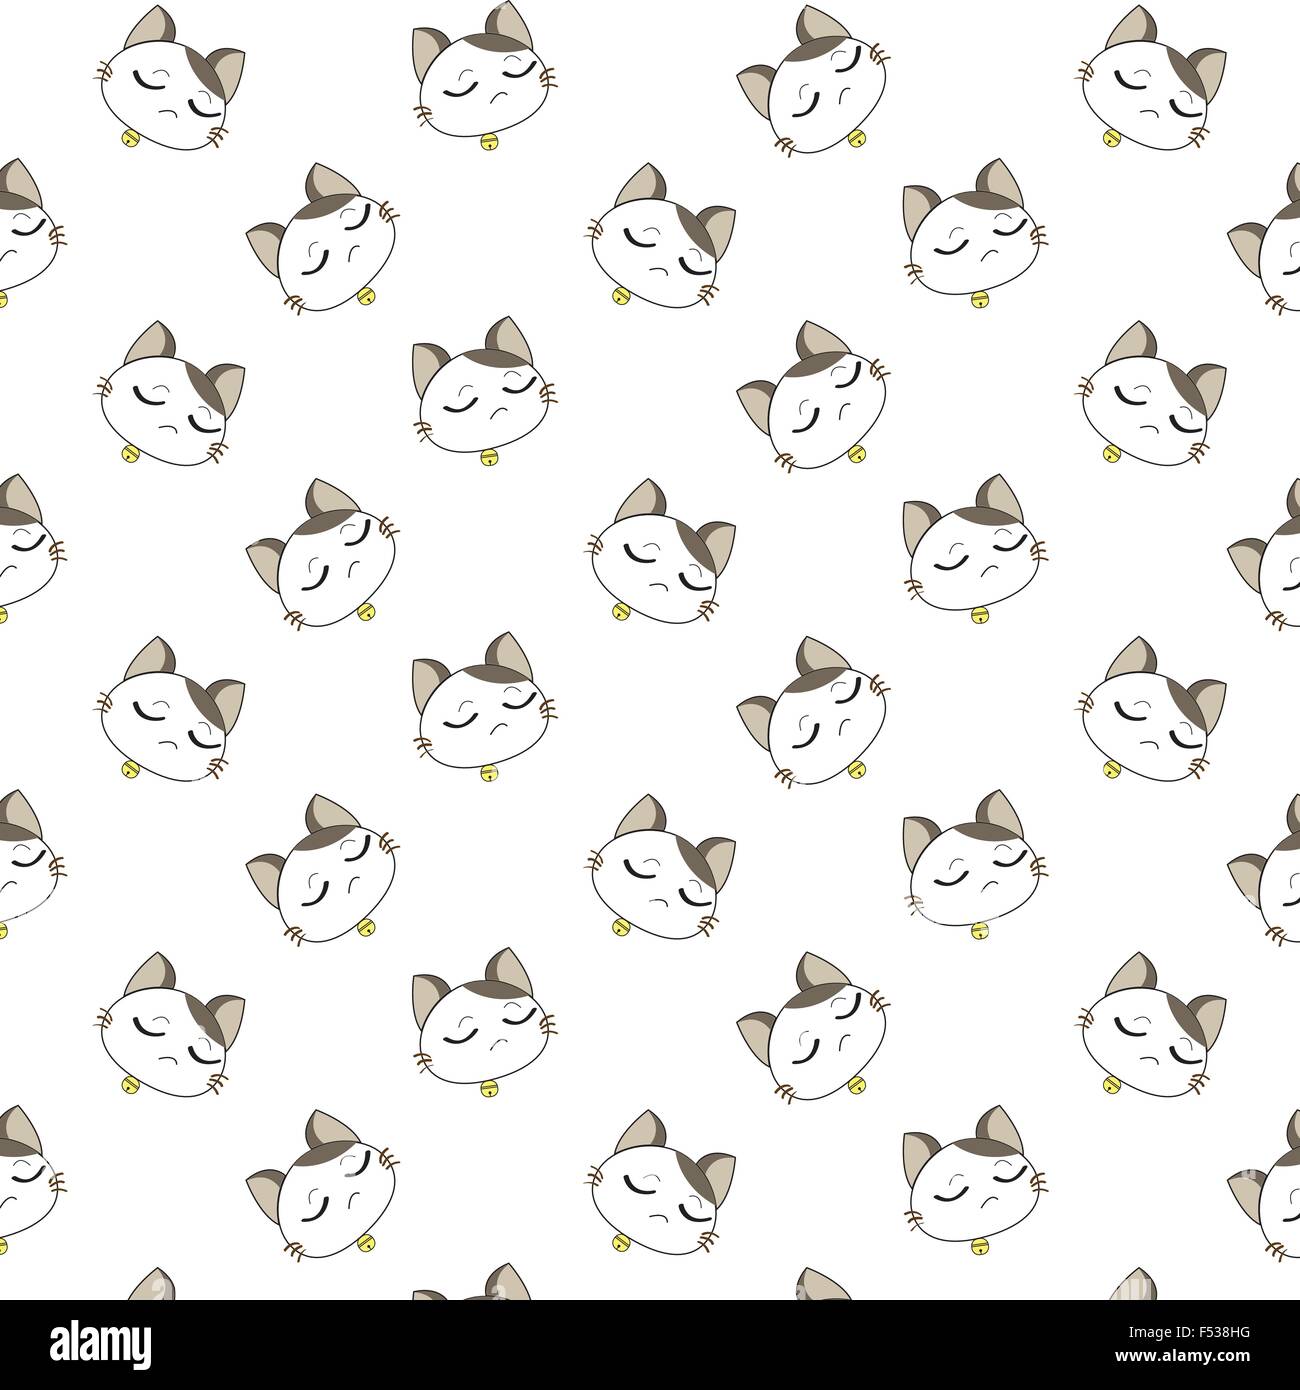 Cute Cartoon Cats Pattern. Stock Vector